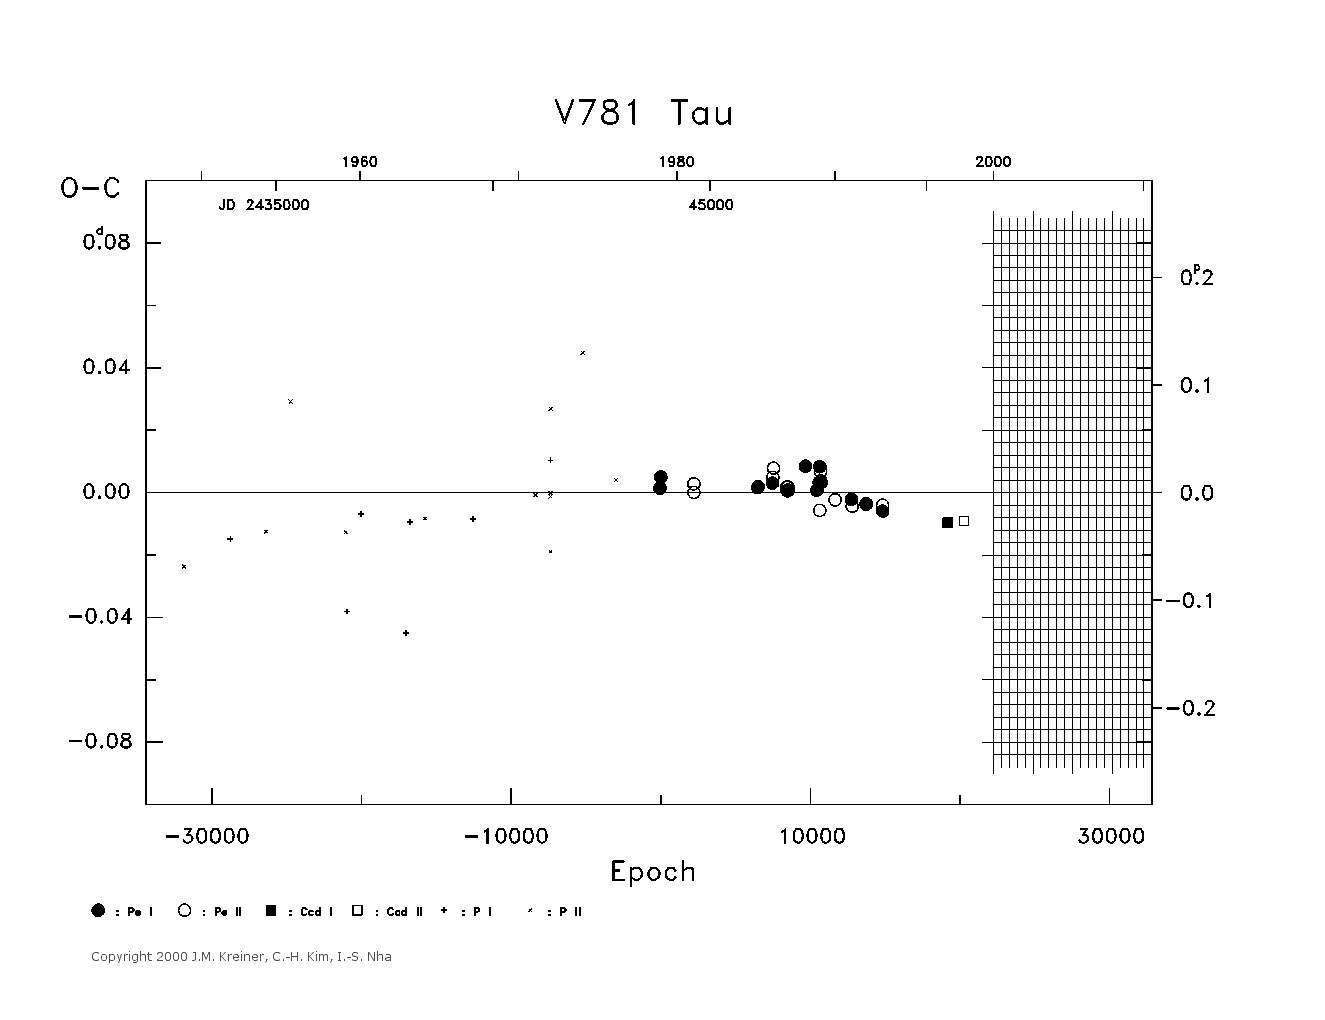 [IMAGE: large V781 TAU O-C diagram]